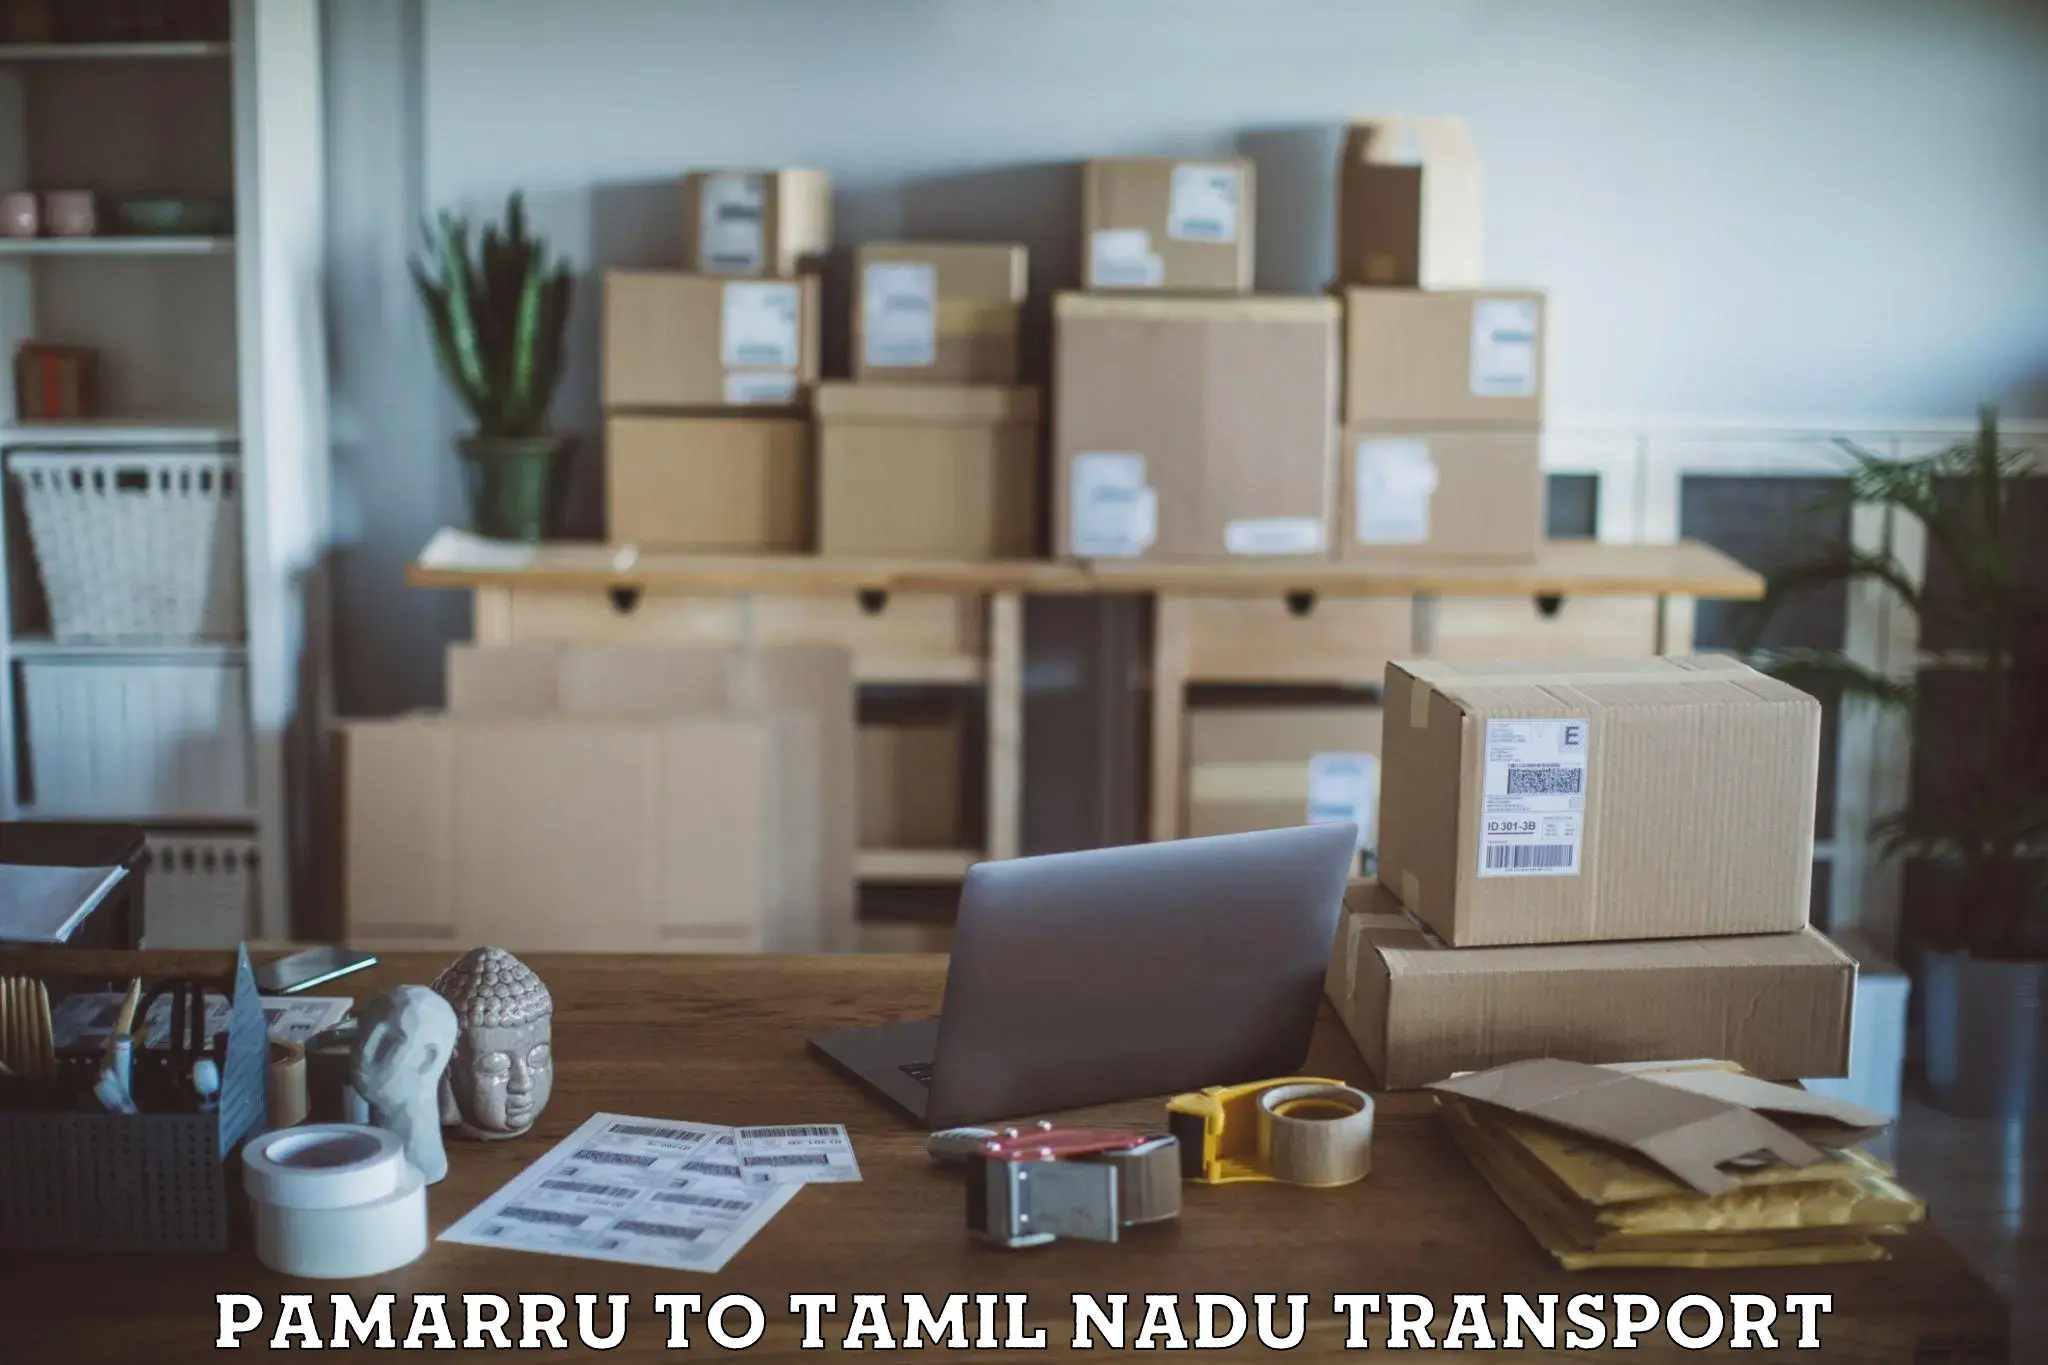 Daily parcel service transport Pamarru to Neyveli